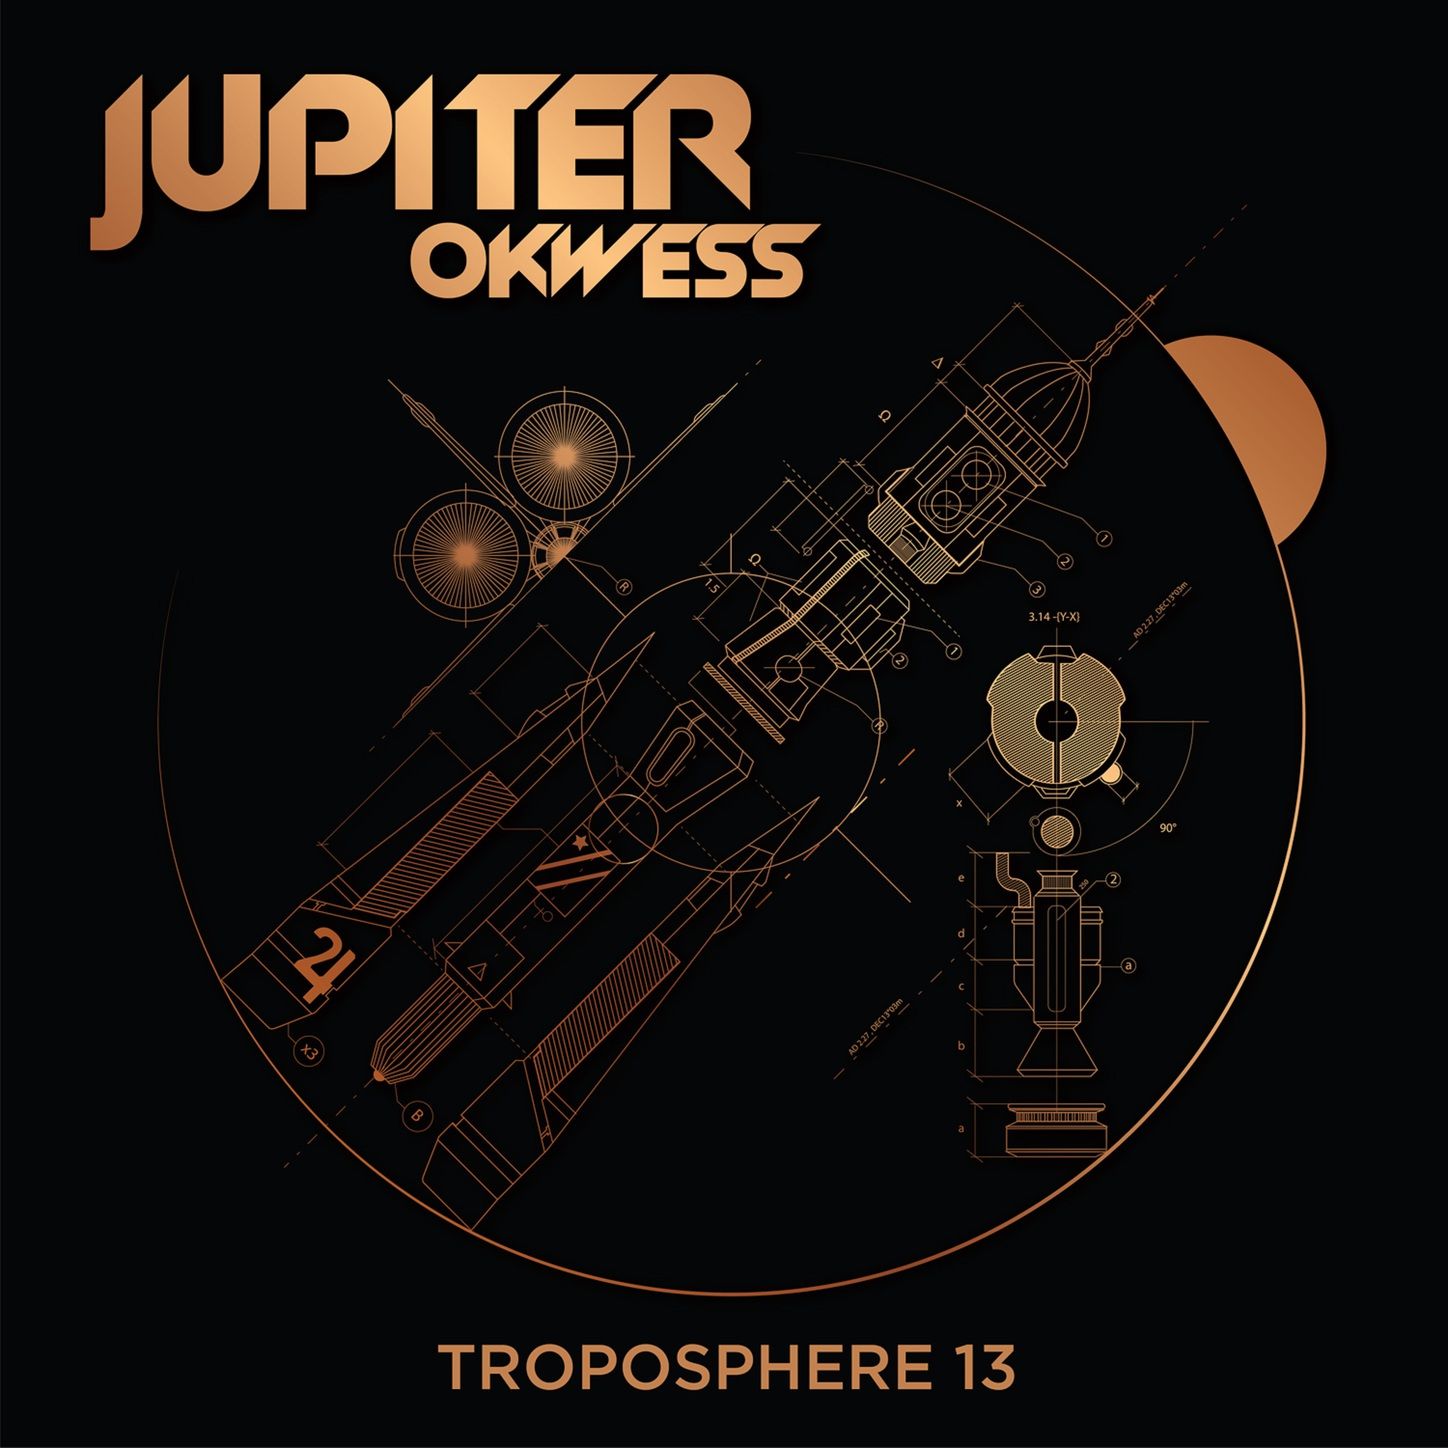 Troposphere 13